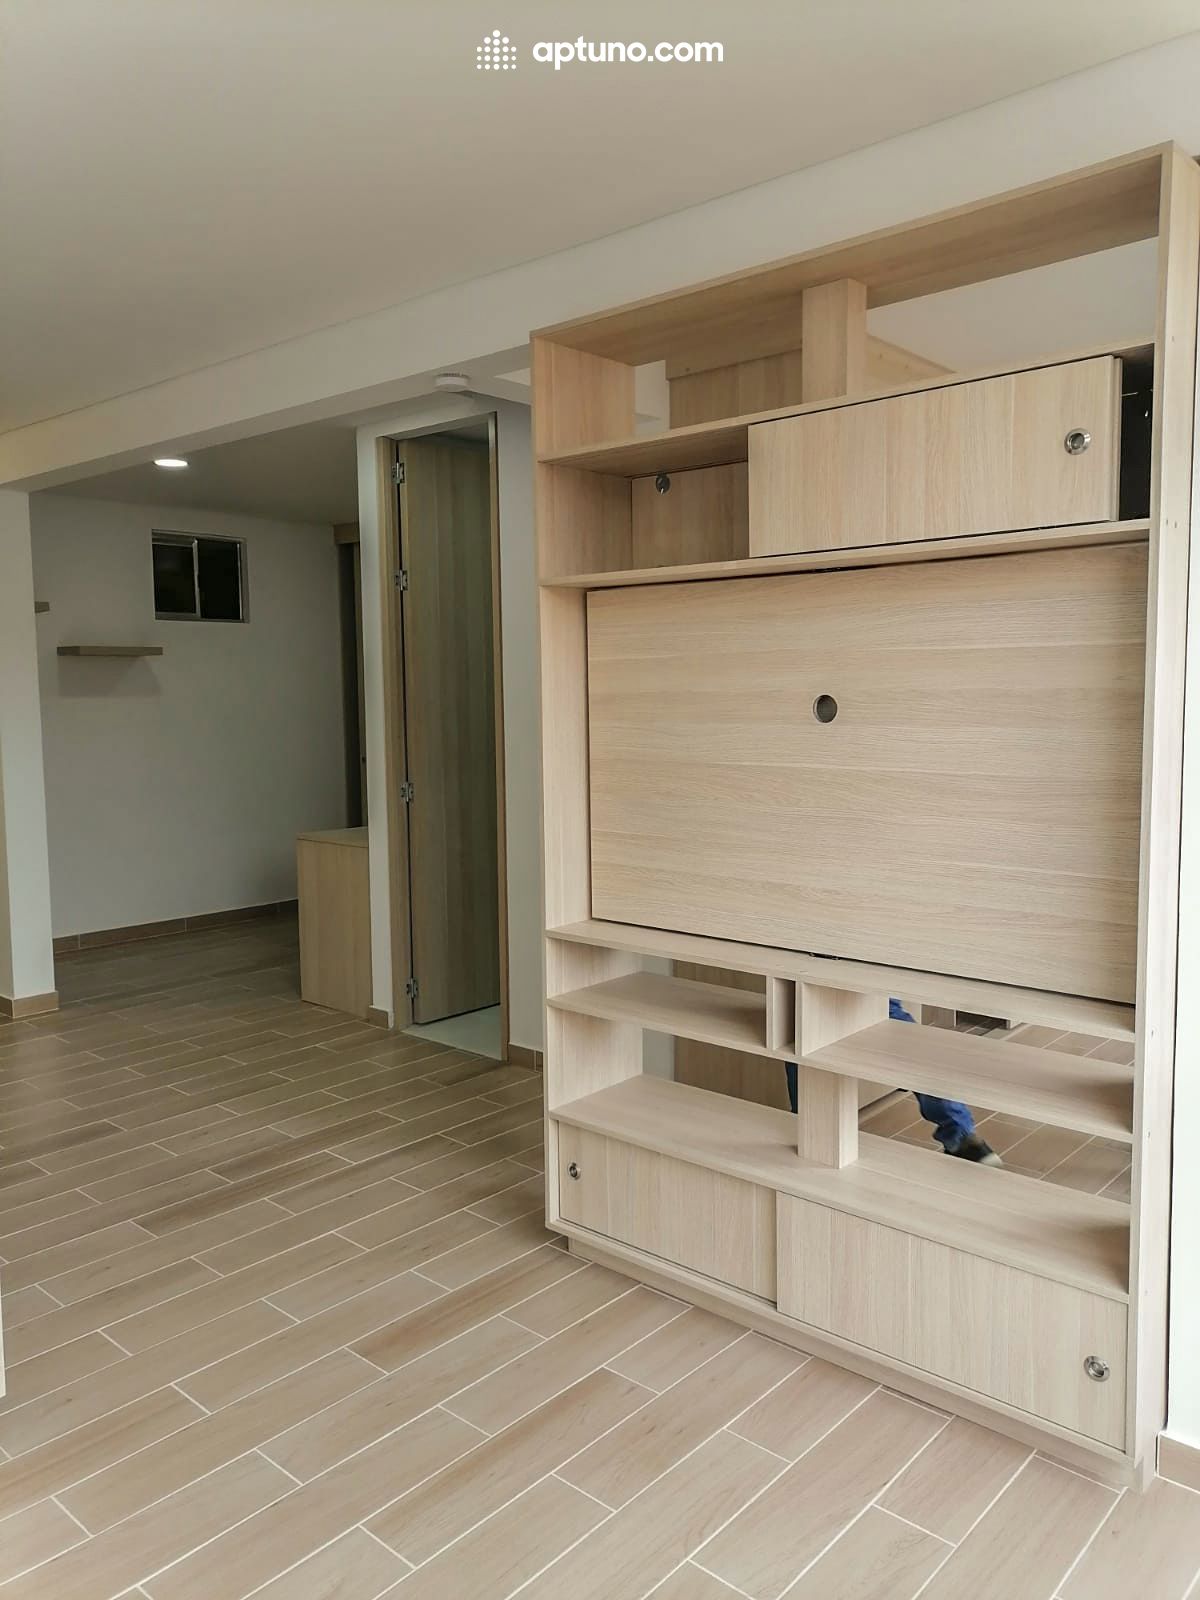 Apartamento en arriendo Nueva Zelandia 40 m² - $ 1.300.000